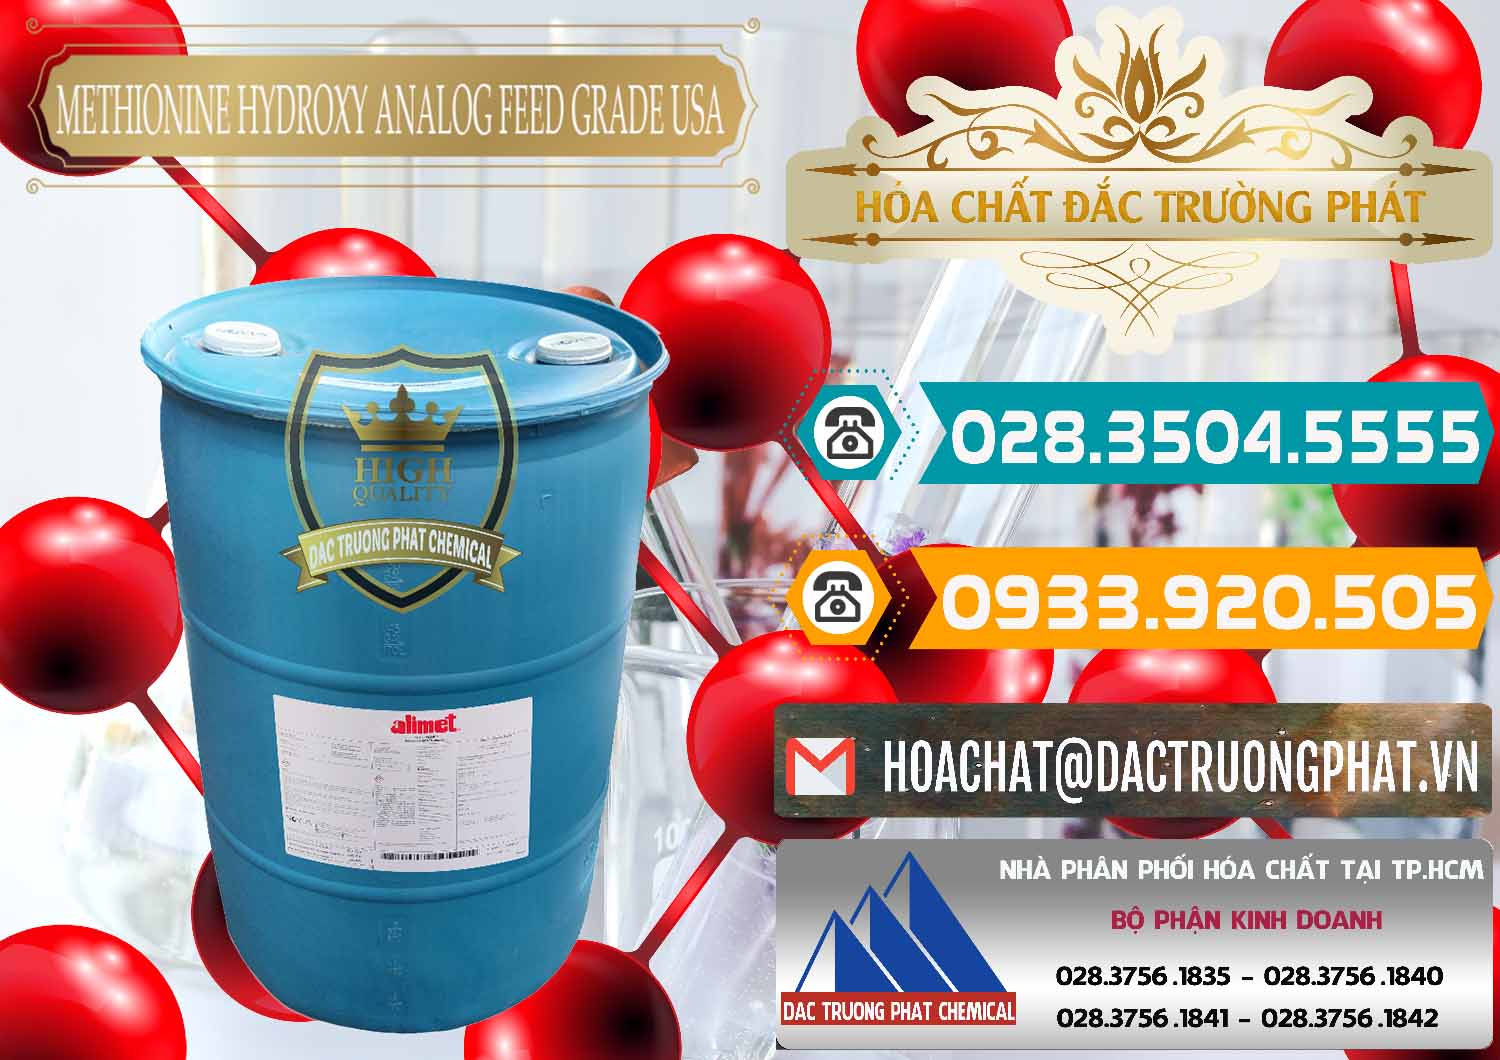 Chuyên cung cấp _ bán Methionine Nước - Dạng Lỏng Novus Alimet Mỹ USA - 0316 - Kinh doanh và cung cấp hóa chất tại TP.HCM - congtyhoachat.vn